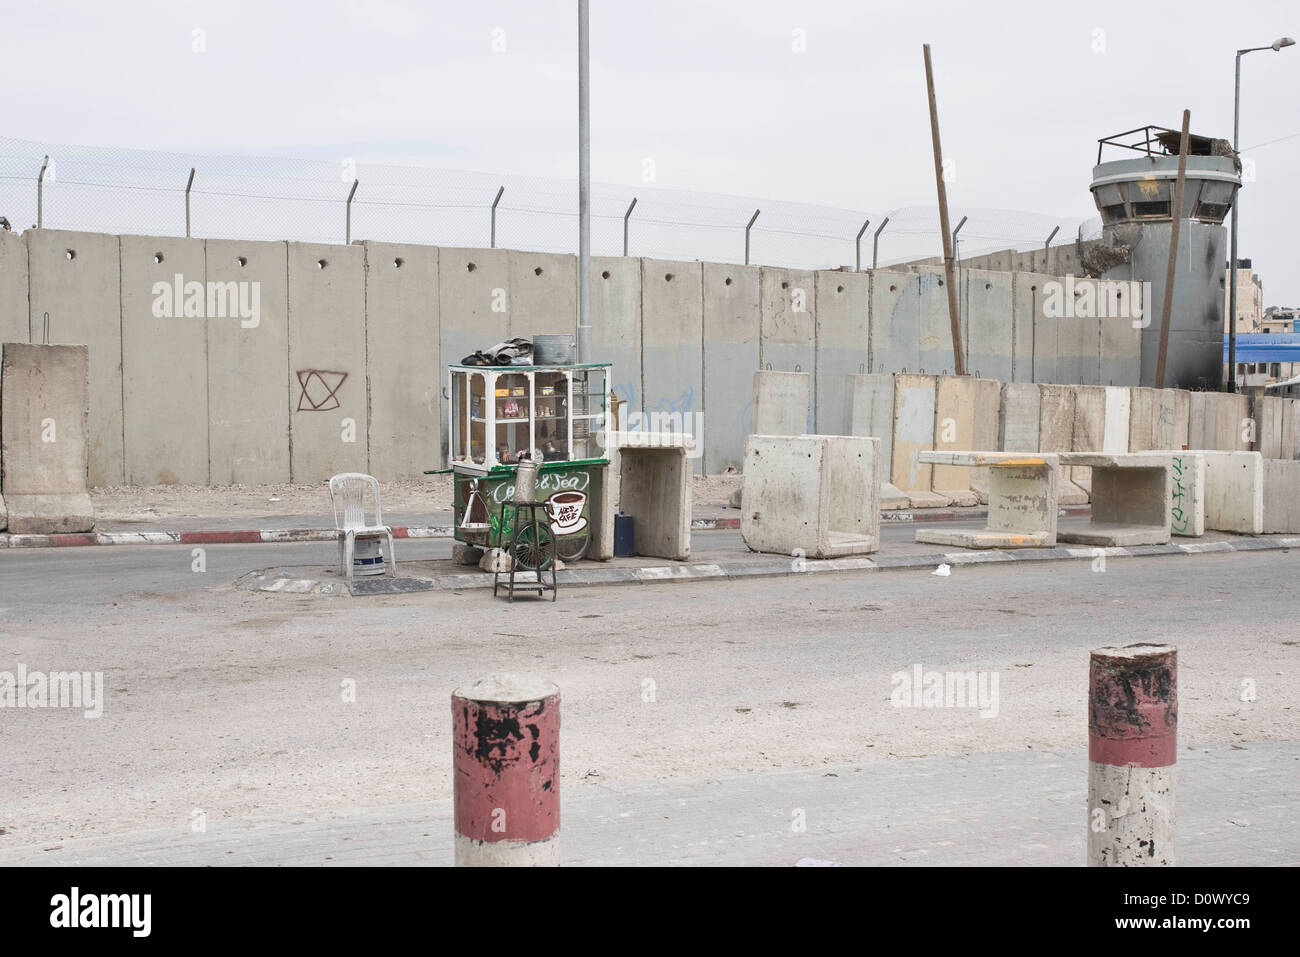 Le mur de séparation en Cisjordanie divisant la population juive et palestinienne, en Cisjordanie, en Palestine. Banque D'Images